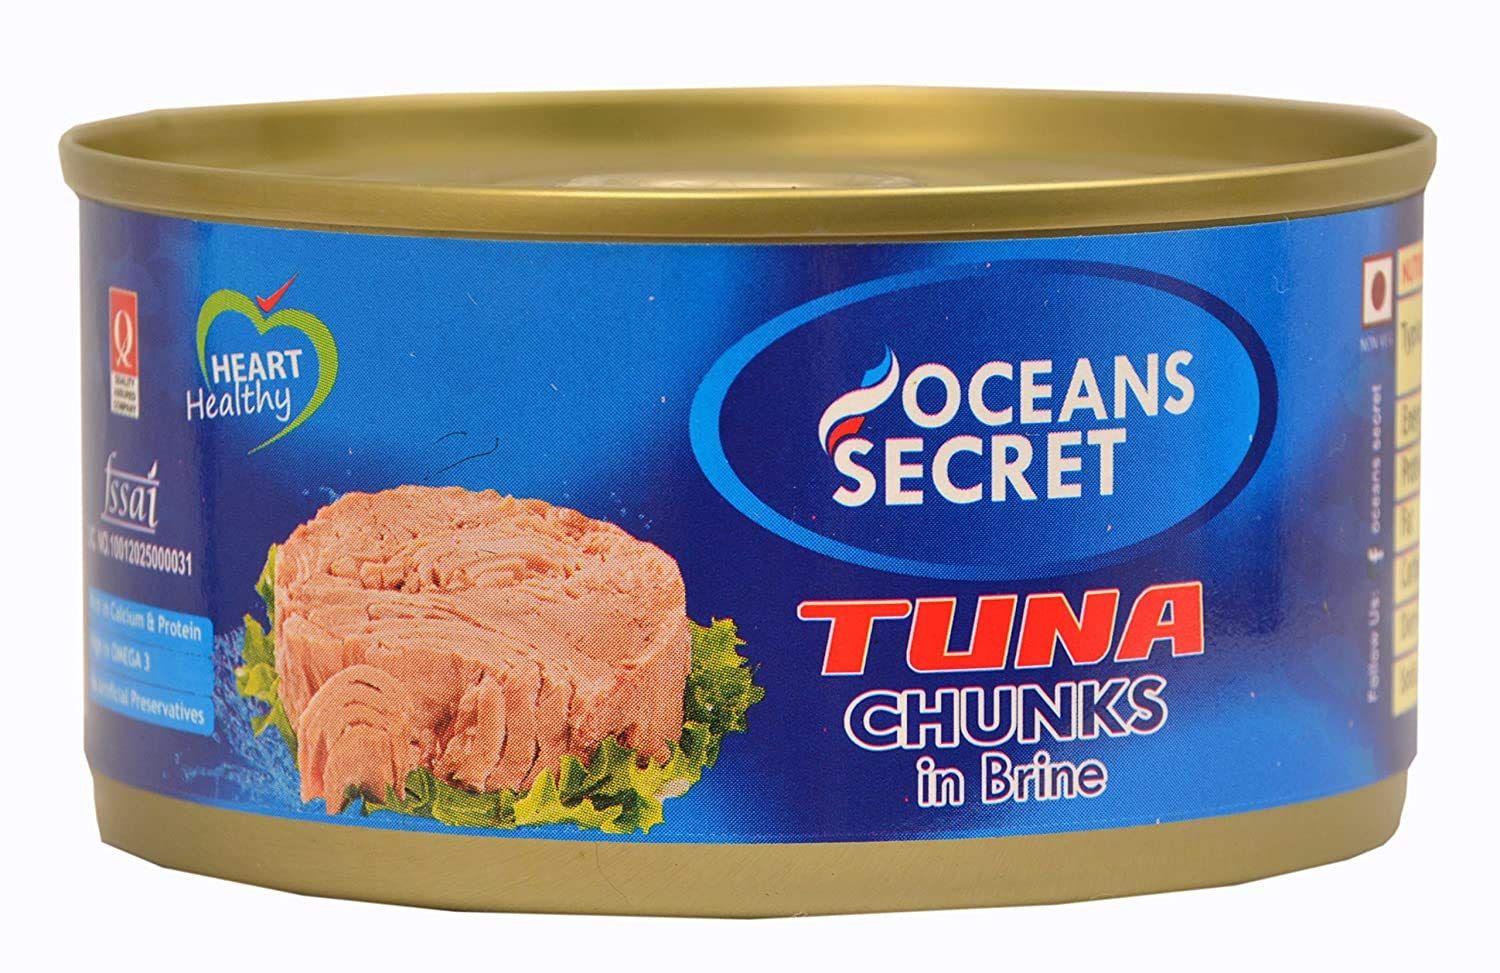 Ocean's Secret Canned Tuna Chunks in Brine Image